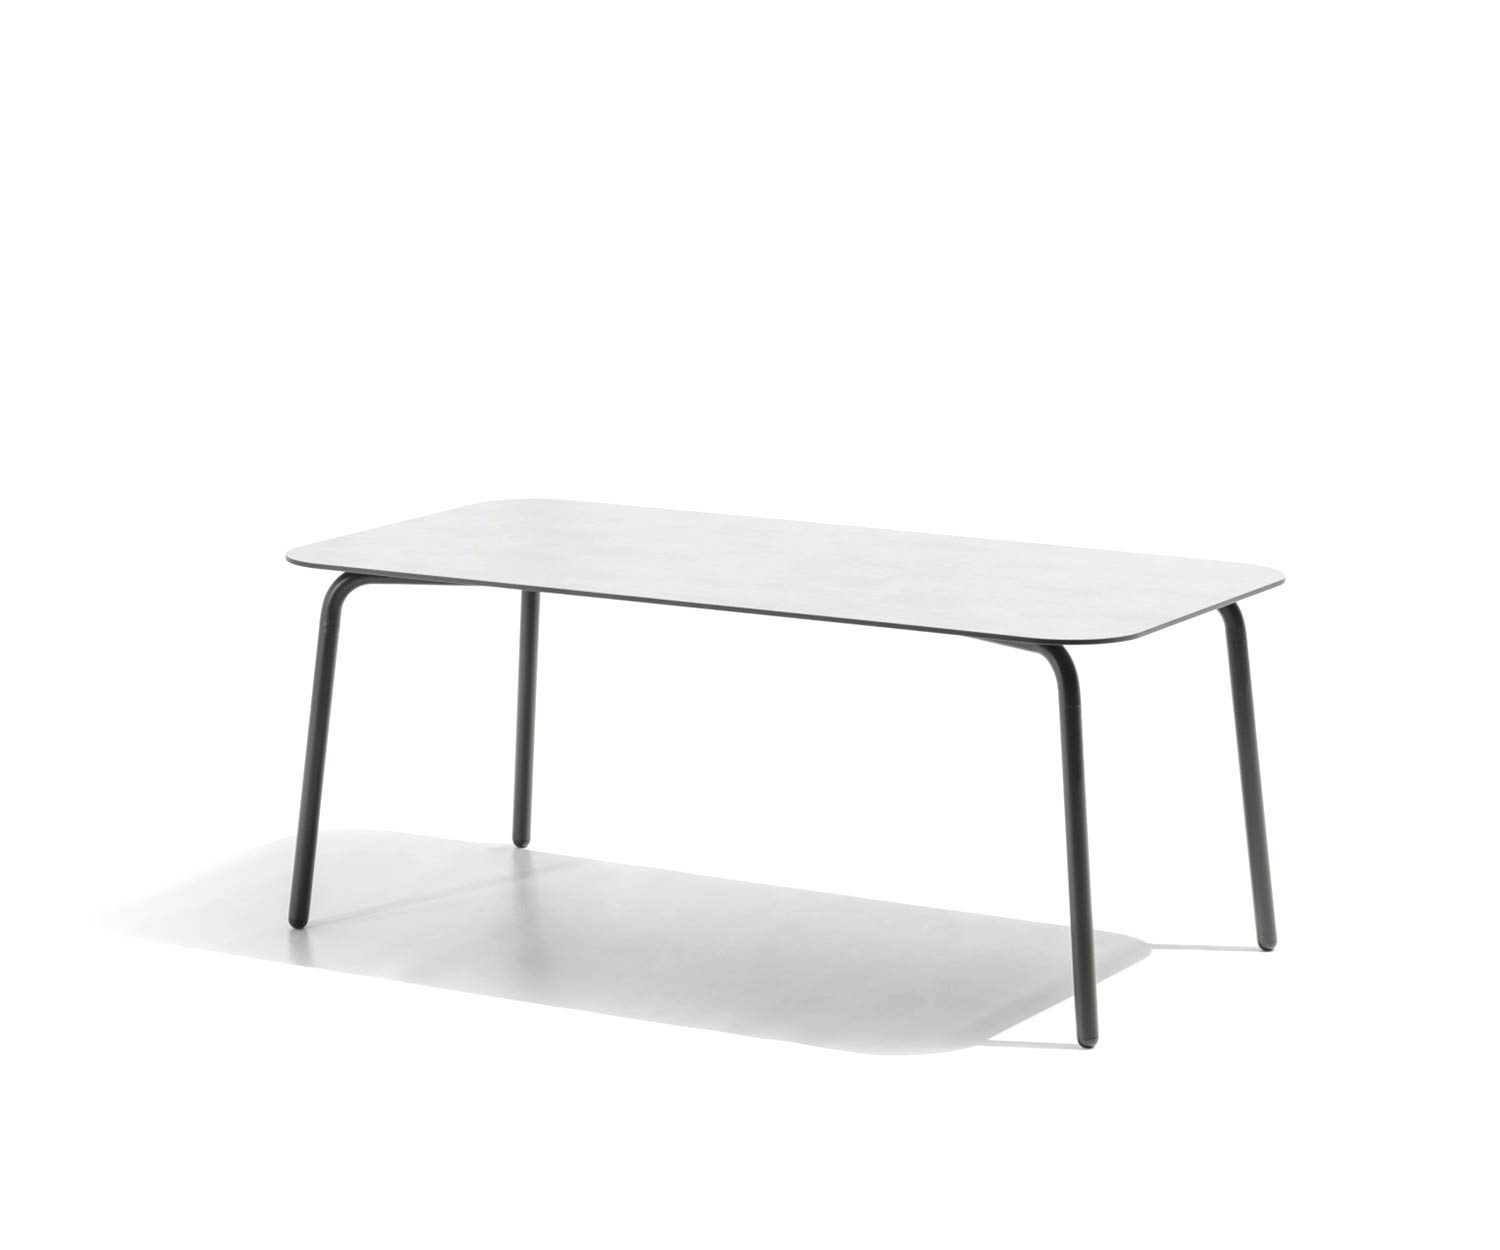 Table de jardin design exclusive Todus Condor avec structure en acier inoxydable revêtue par poudre